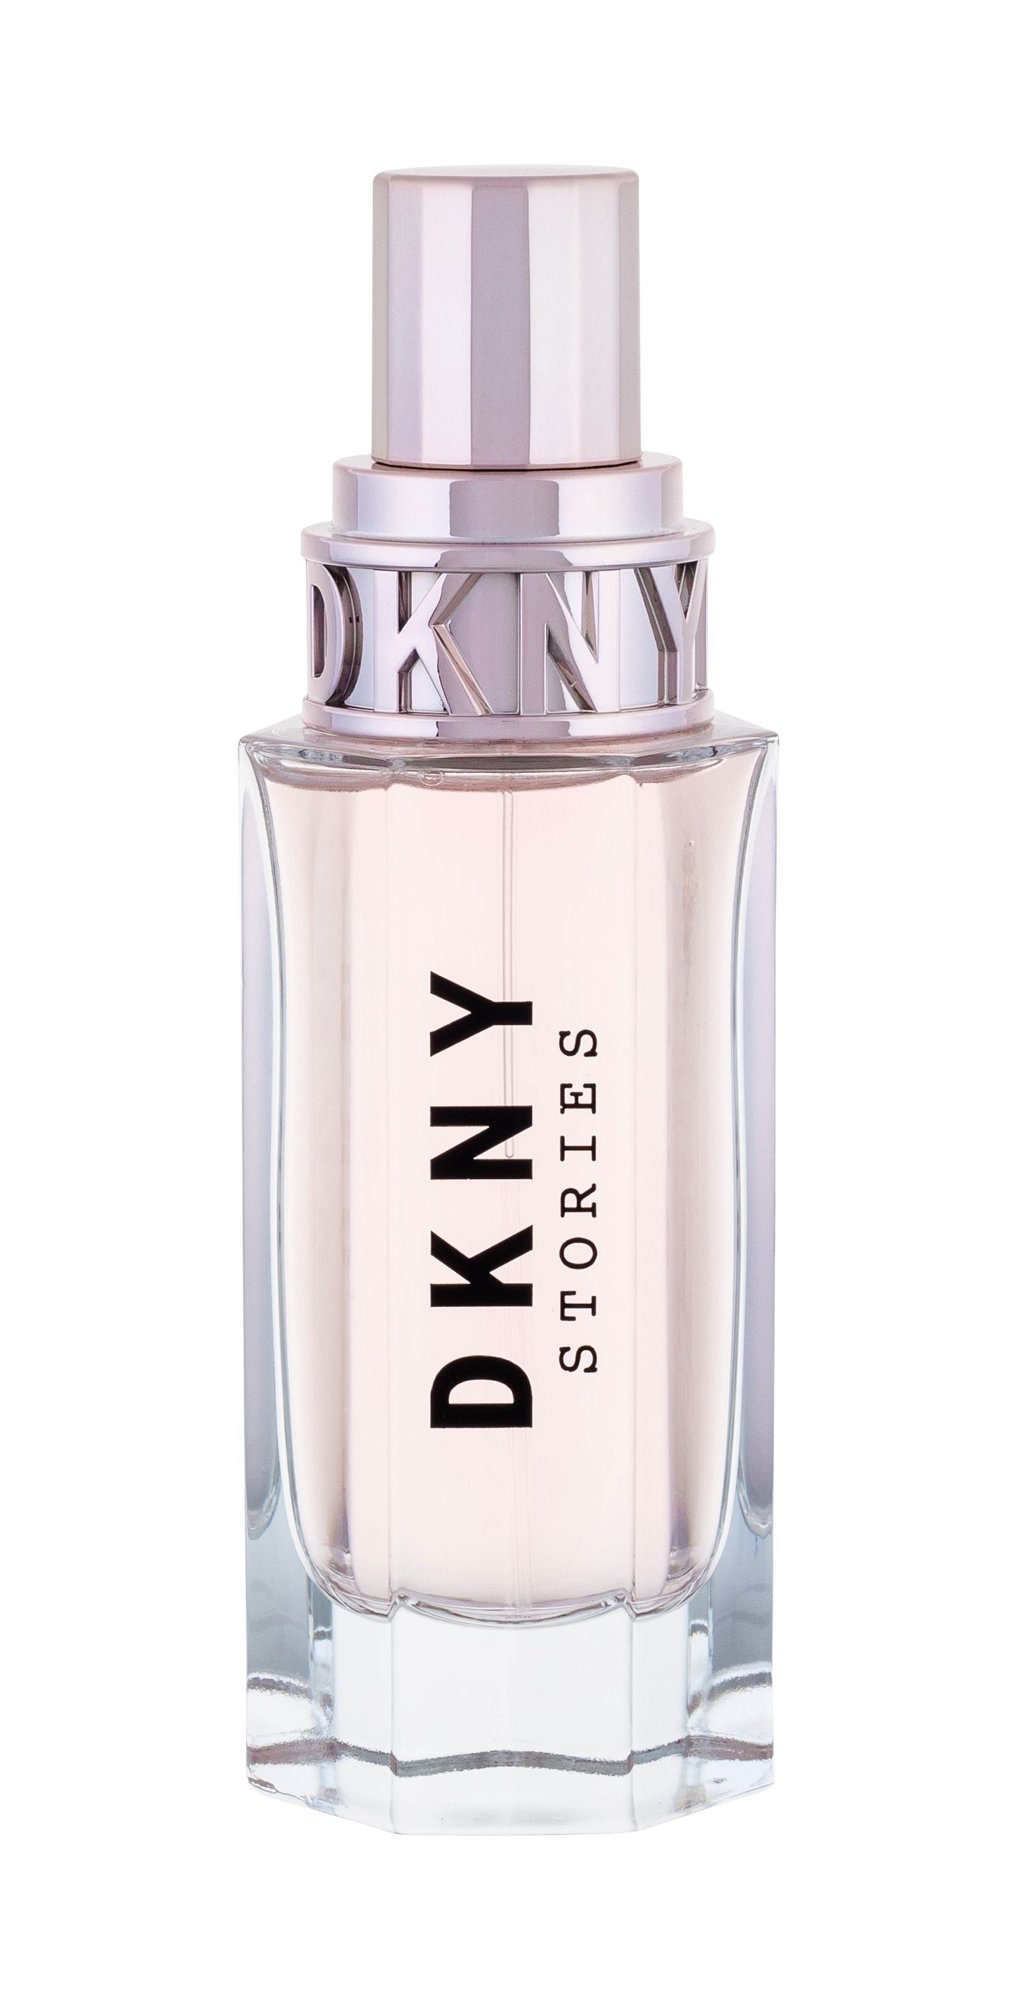 DKNY DKNY Stories, EDP 50ml